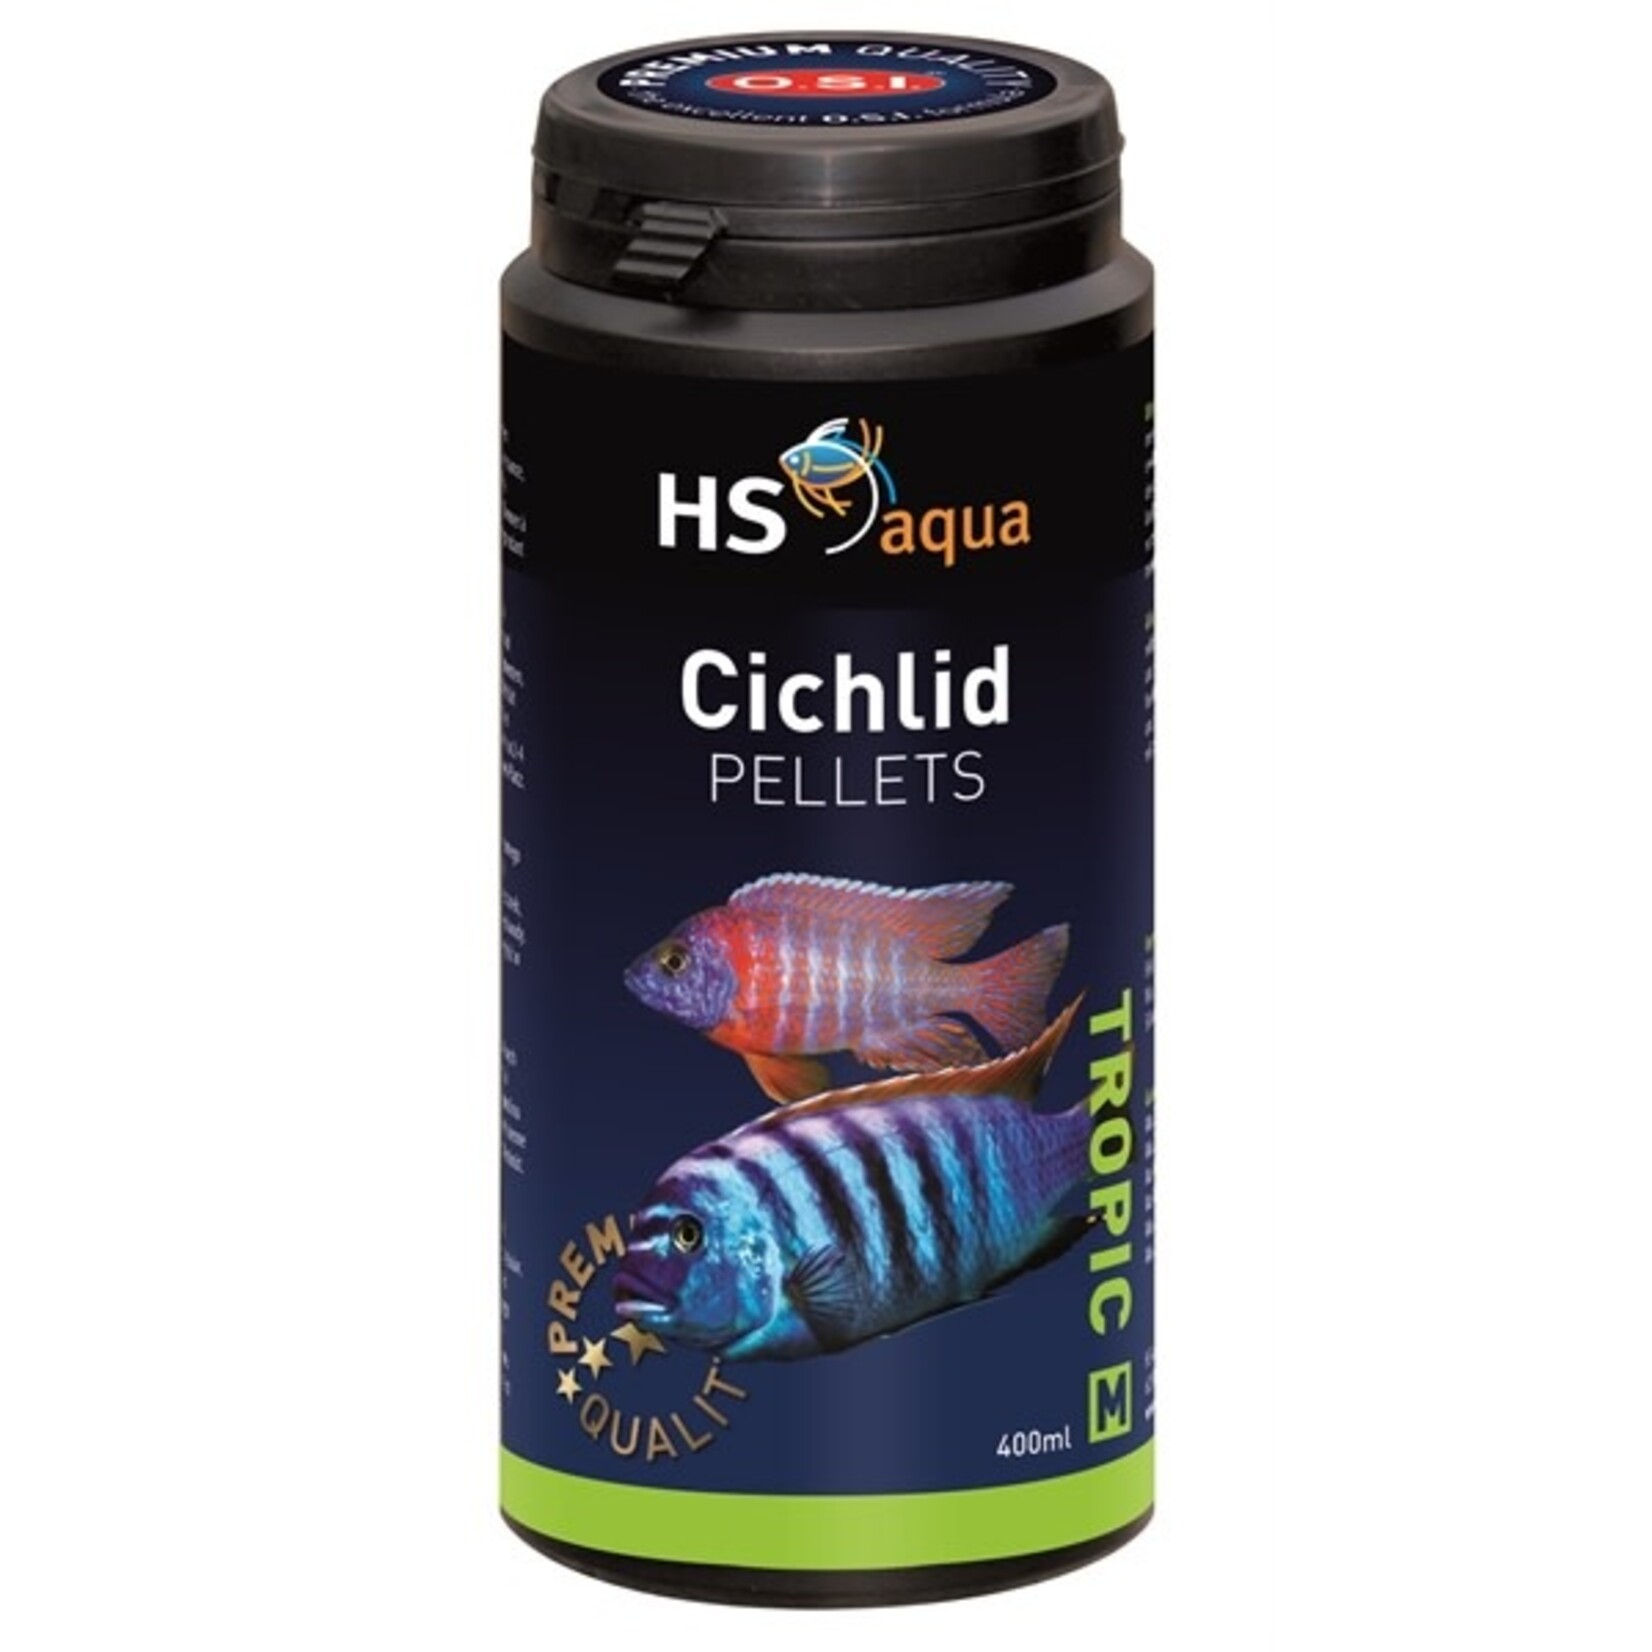 HS Aqua Cichlid pellets s 400 ml